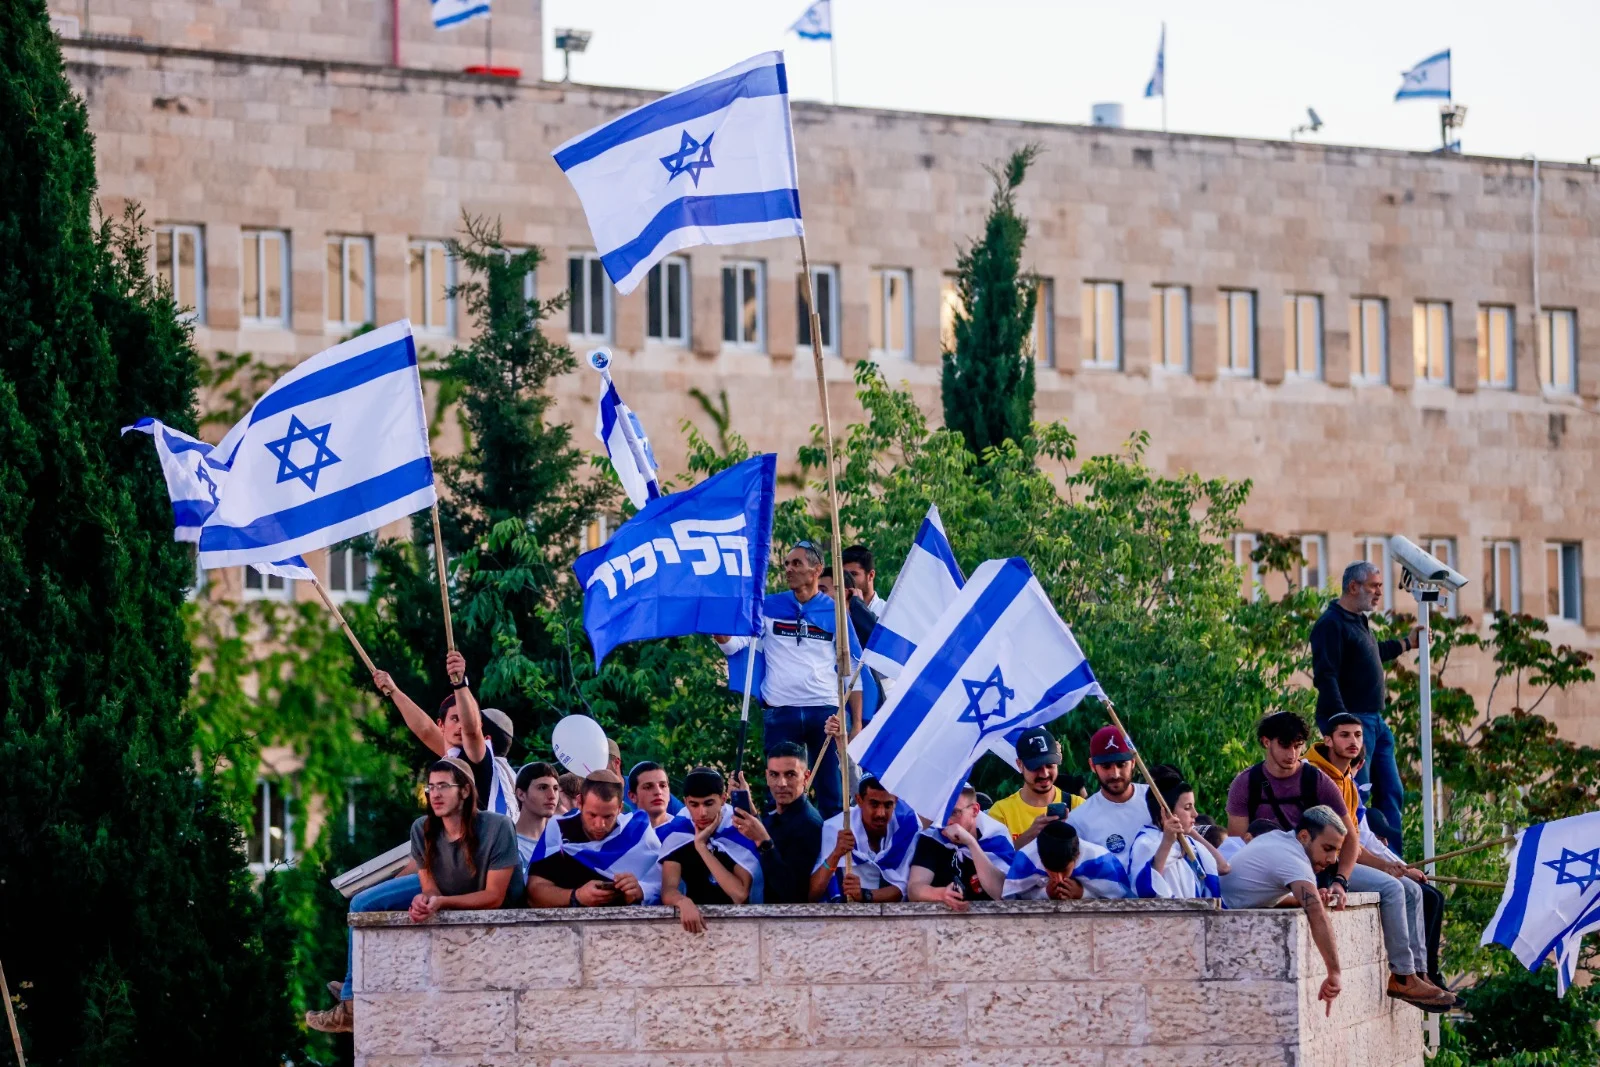 הפגנה בירושלים בעד המהפכה המשפטית